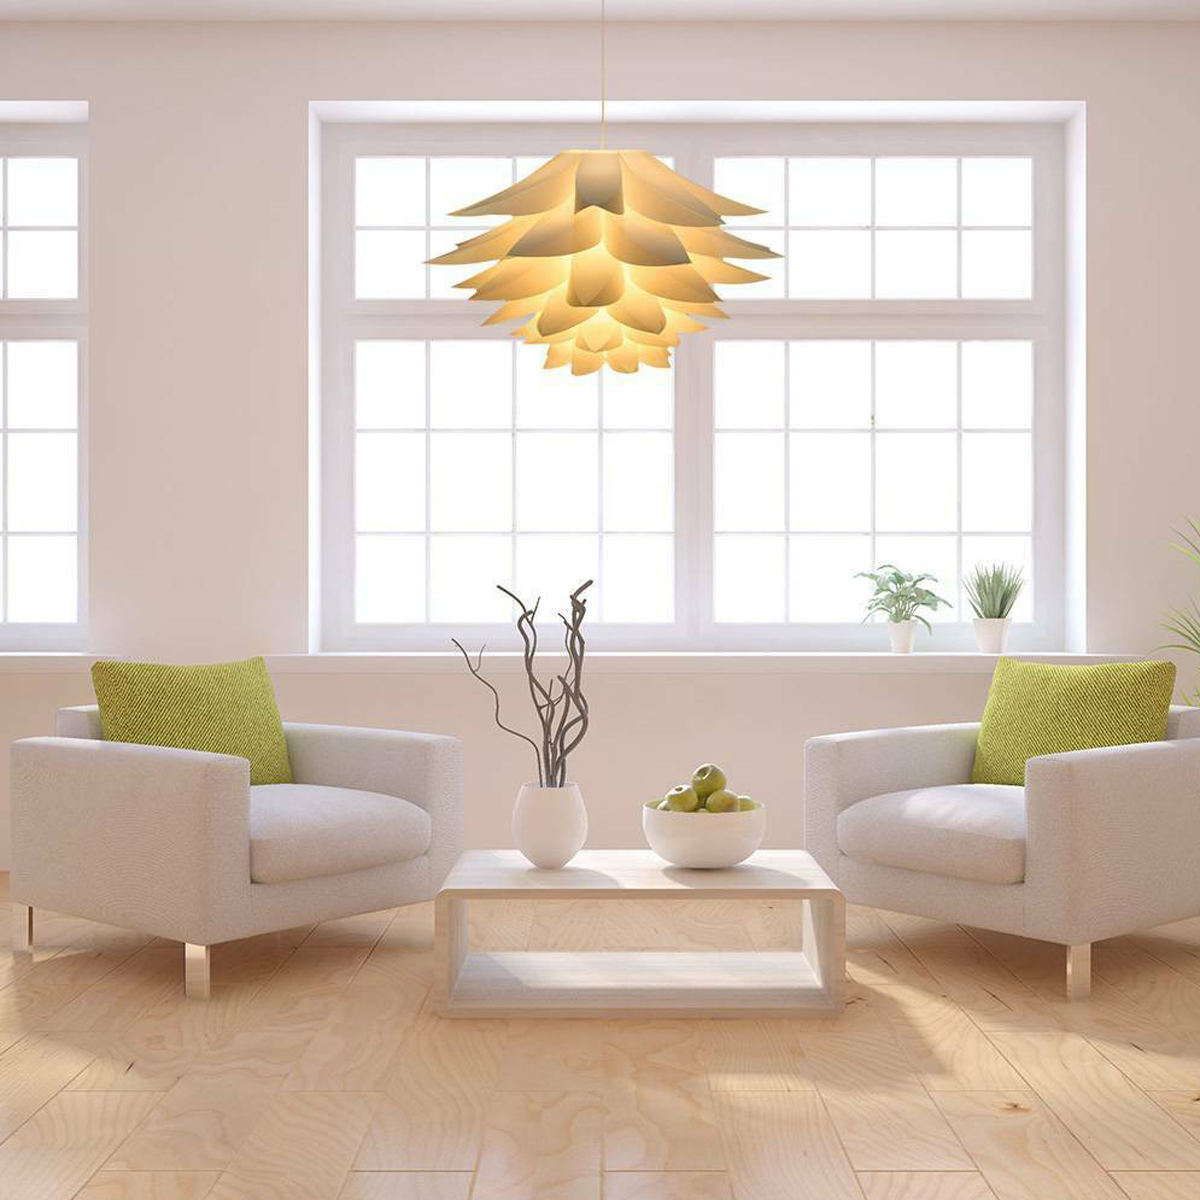 7-Colors-DIY-Lotus-Chandelier-Shape-Ceiling-Pendant-Light-Lampshade-Home-Decor-1720633-8